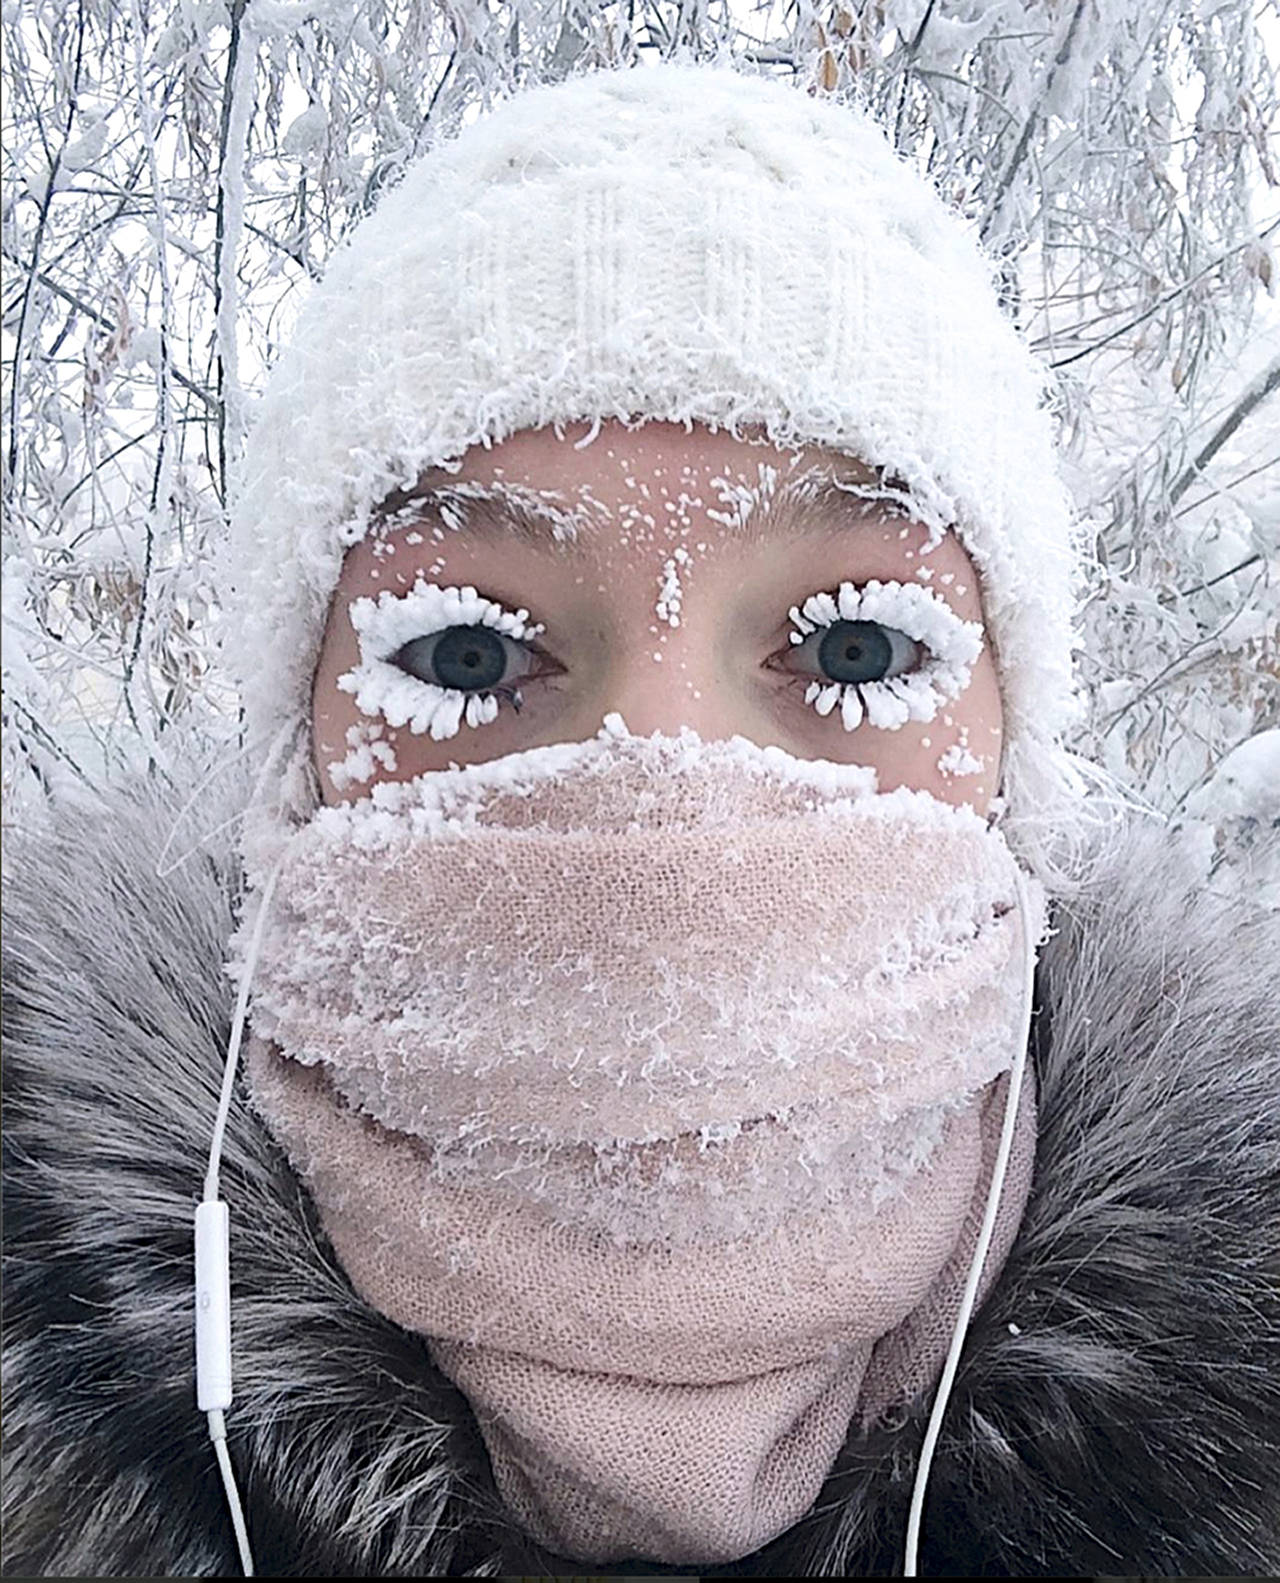 In this photo taken on Sunday, Anastasia Gruzdeva poses for selfie as the Temperature dropped to about -50 degrees (-58 degrees Fahrenheit) in Yakutsk, Russia. (sakhalife.ru photo via AP)